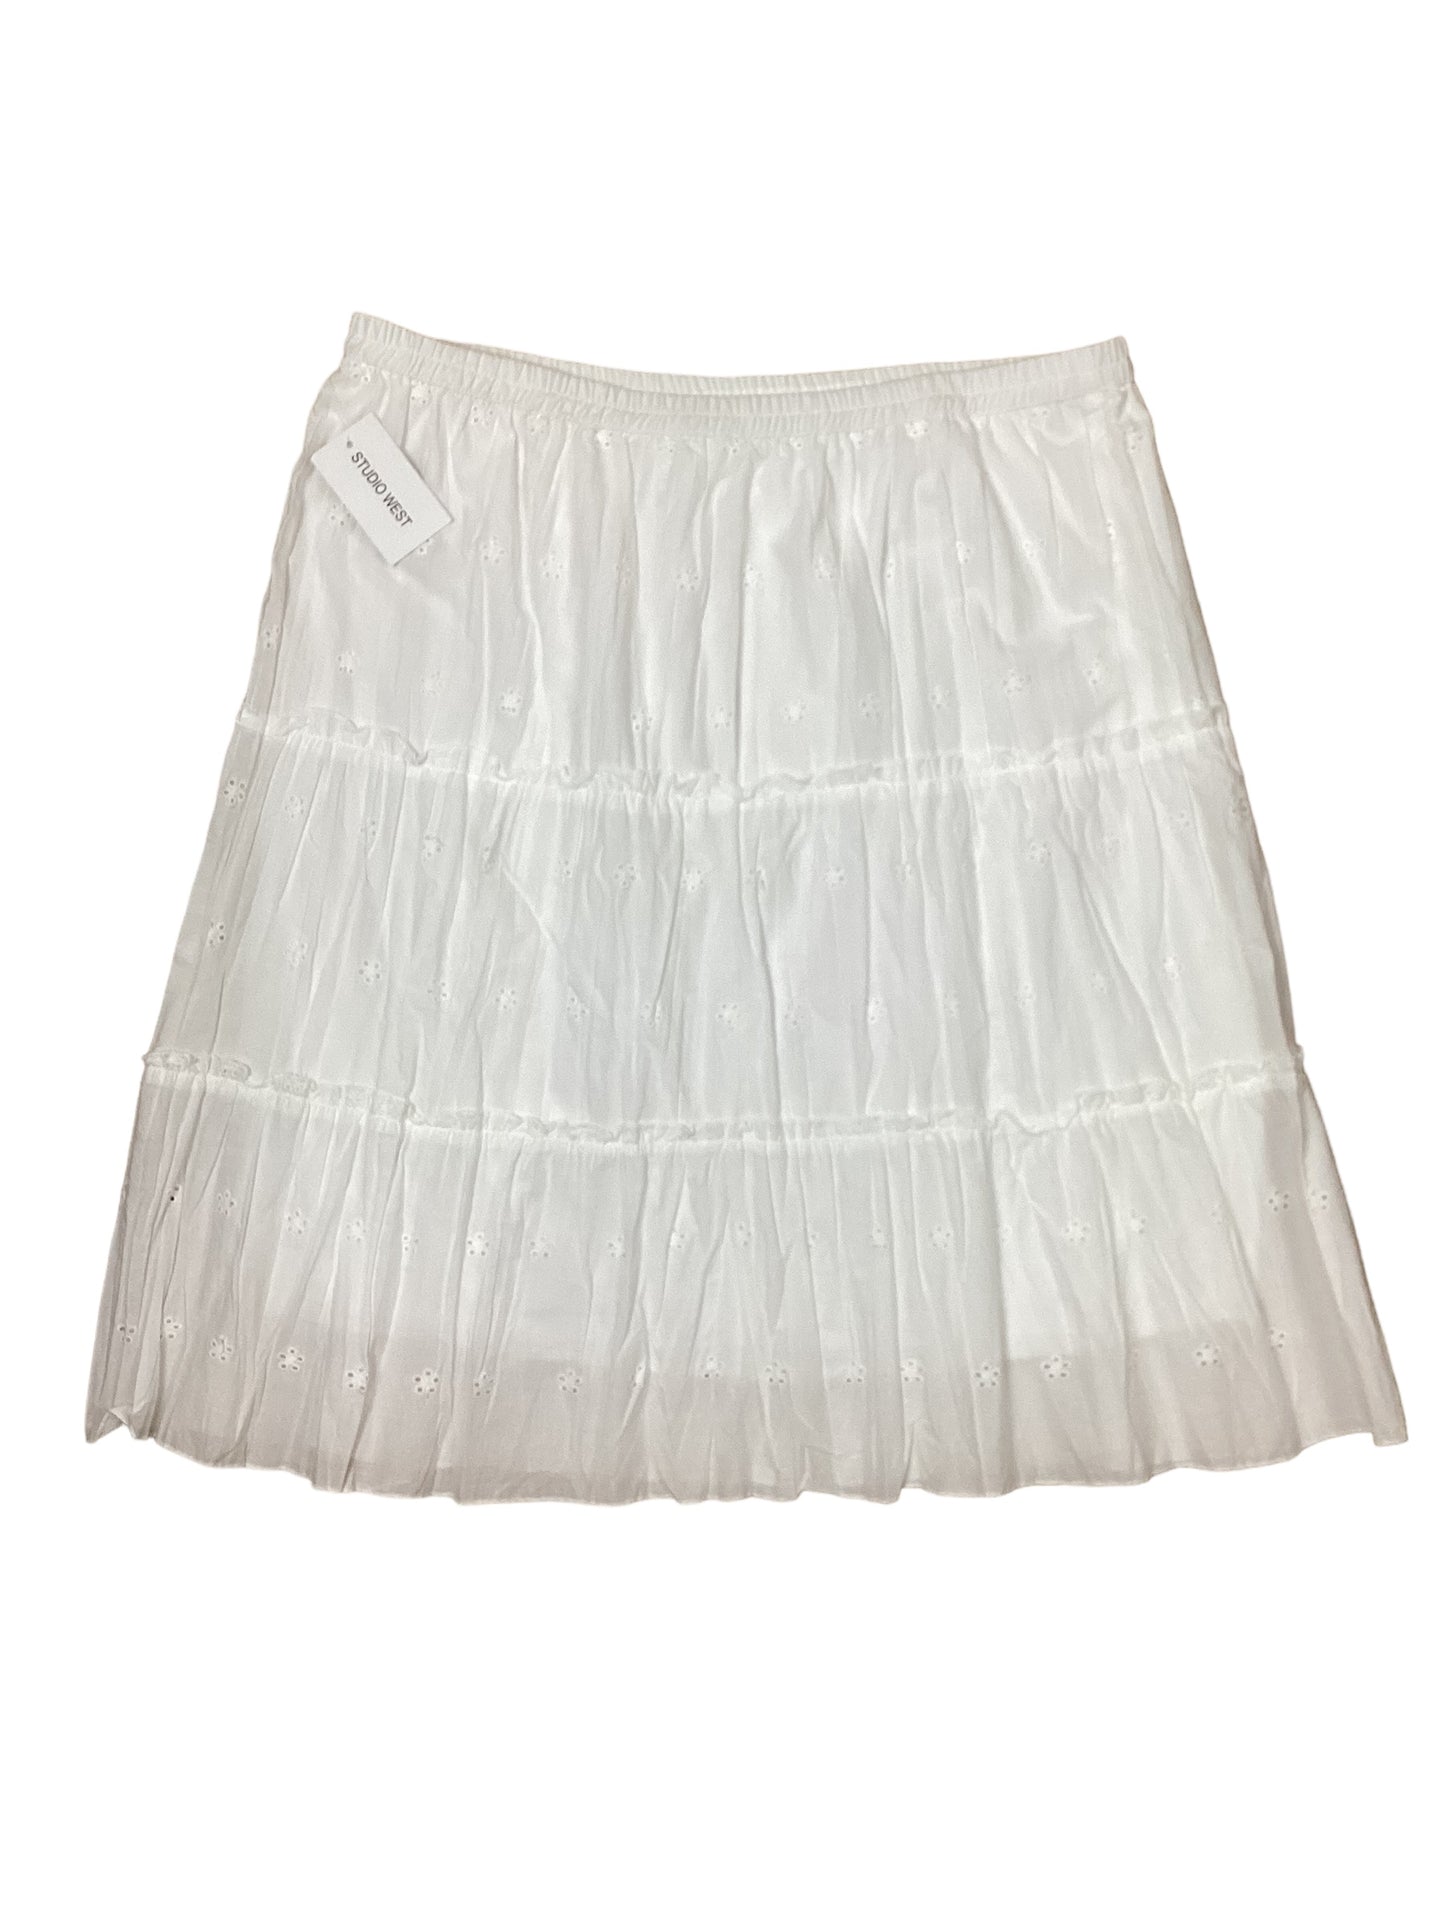 Skirt Midi By Studio West  Size: Xl